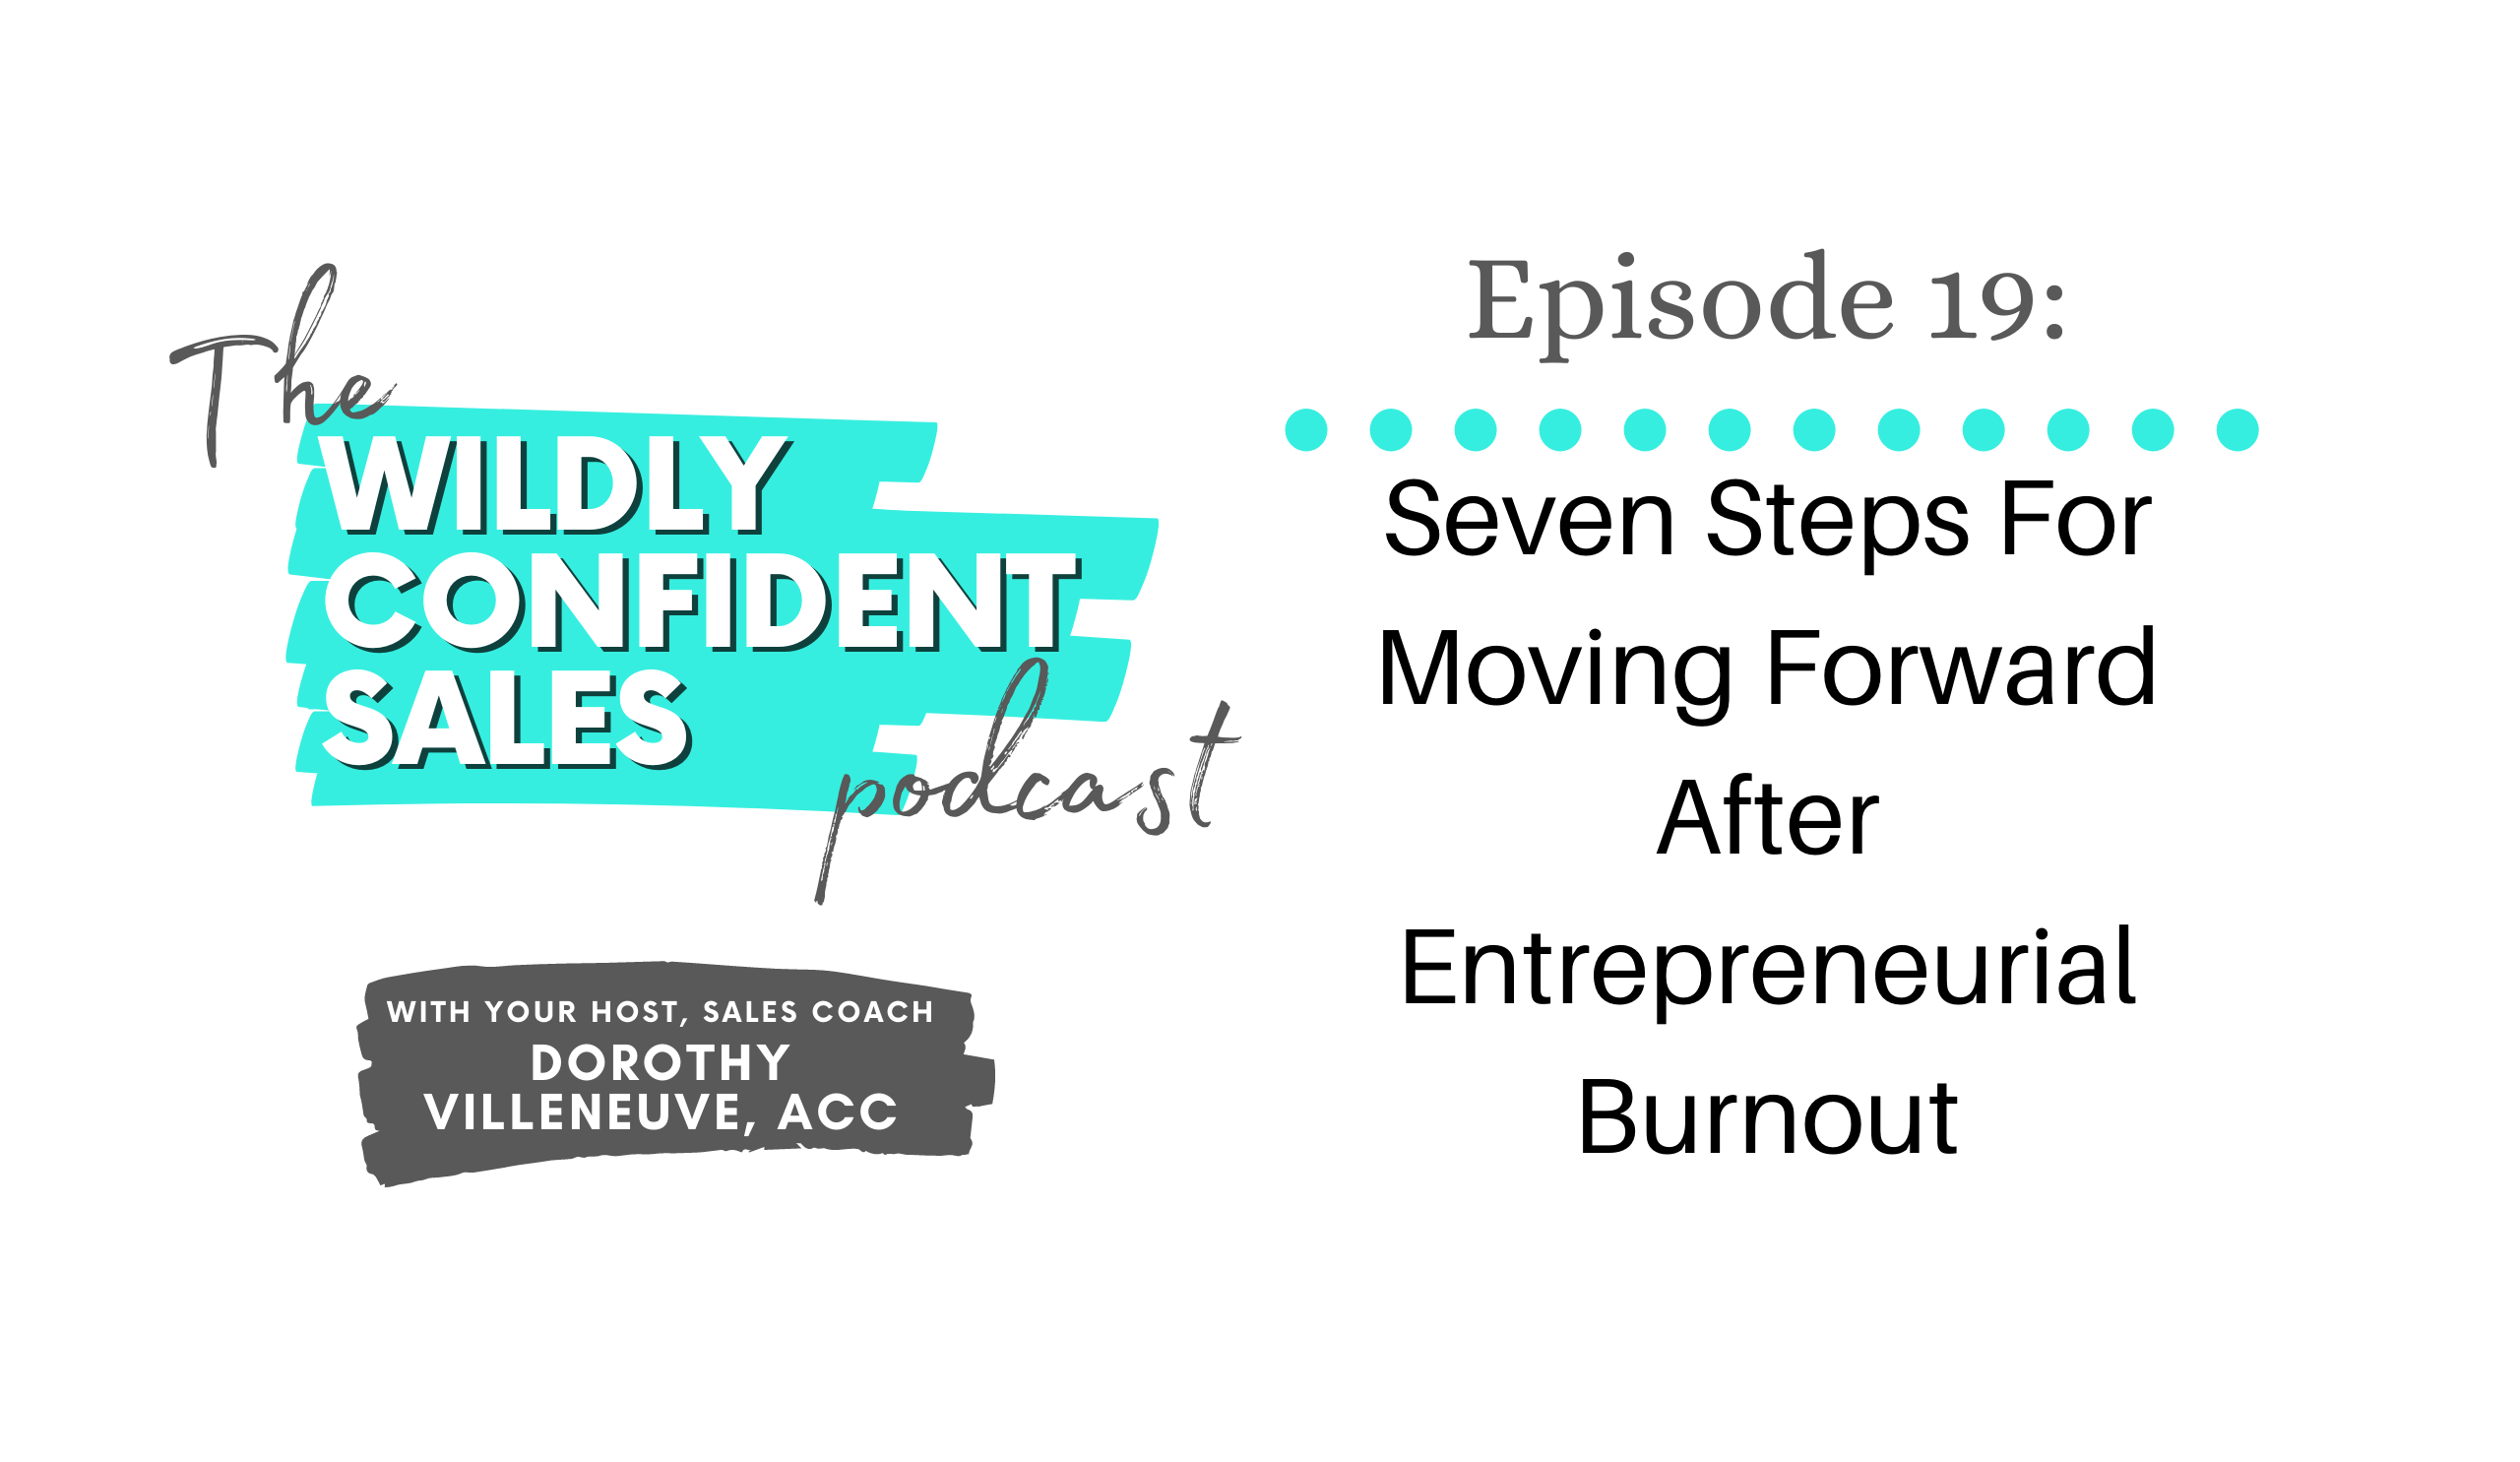 Seven Steps For Moving Forward After Entrepreneurial Burnout